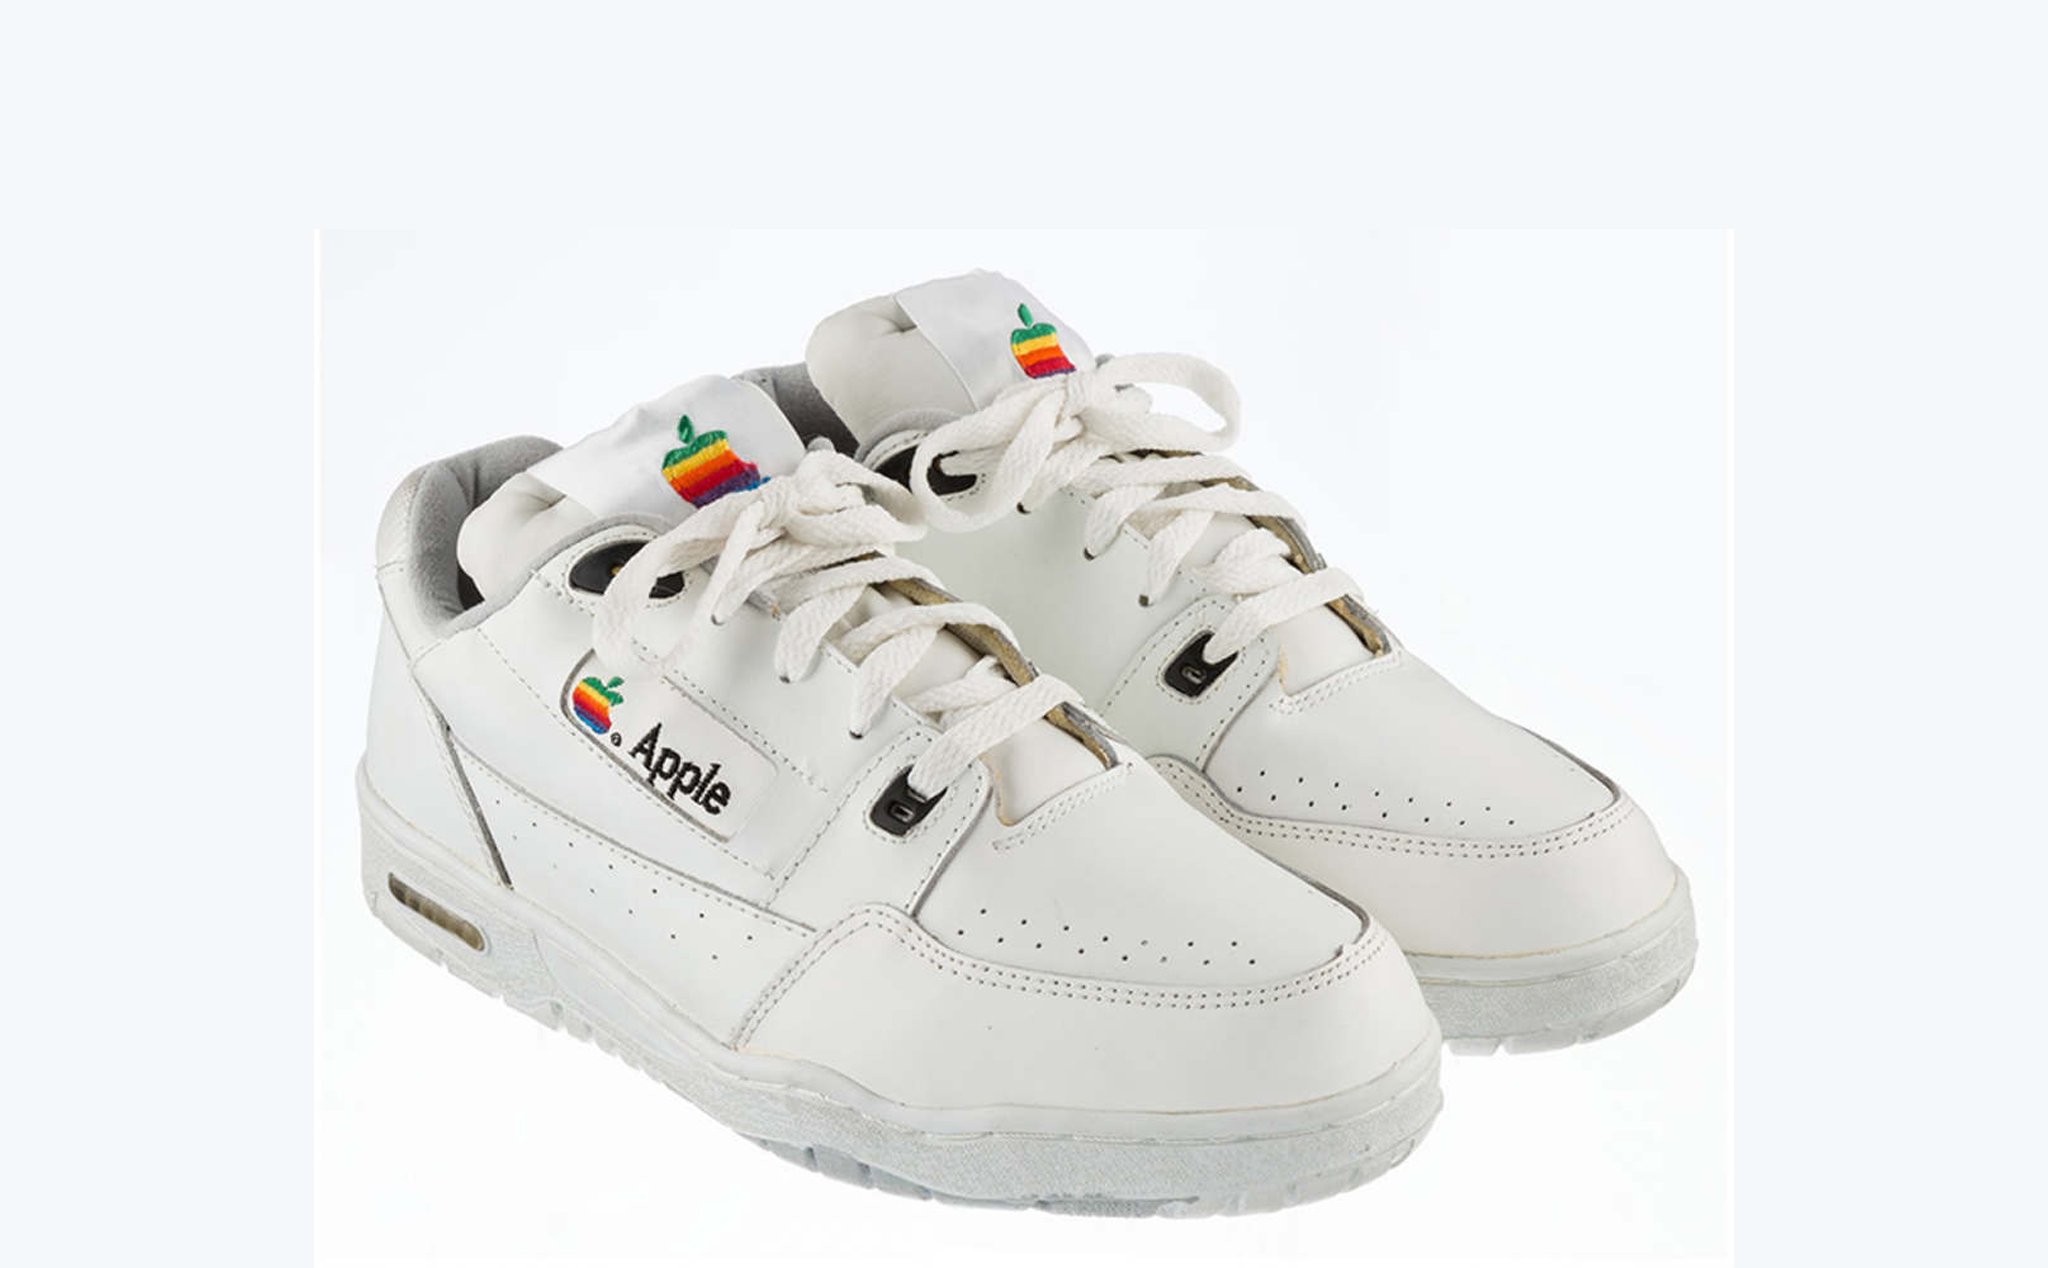 Versace có thể sẽ tung ra đôi giày giống hệt của Apple những năm 90